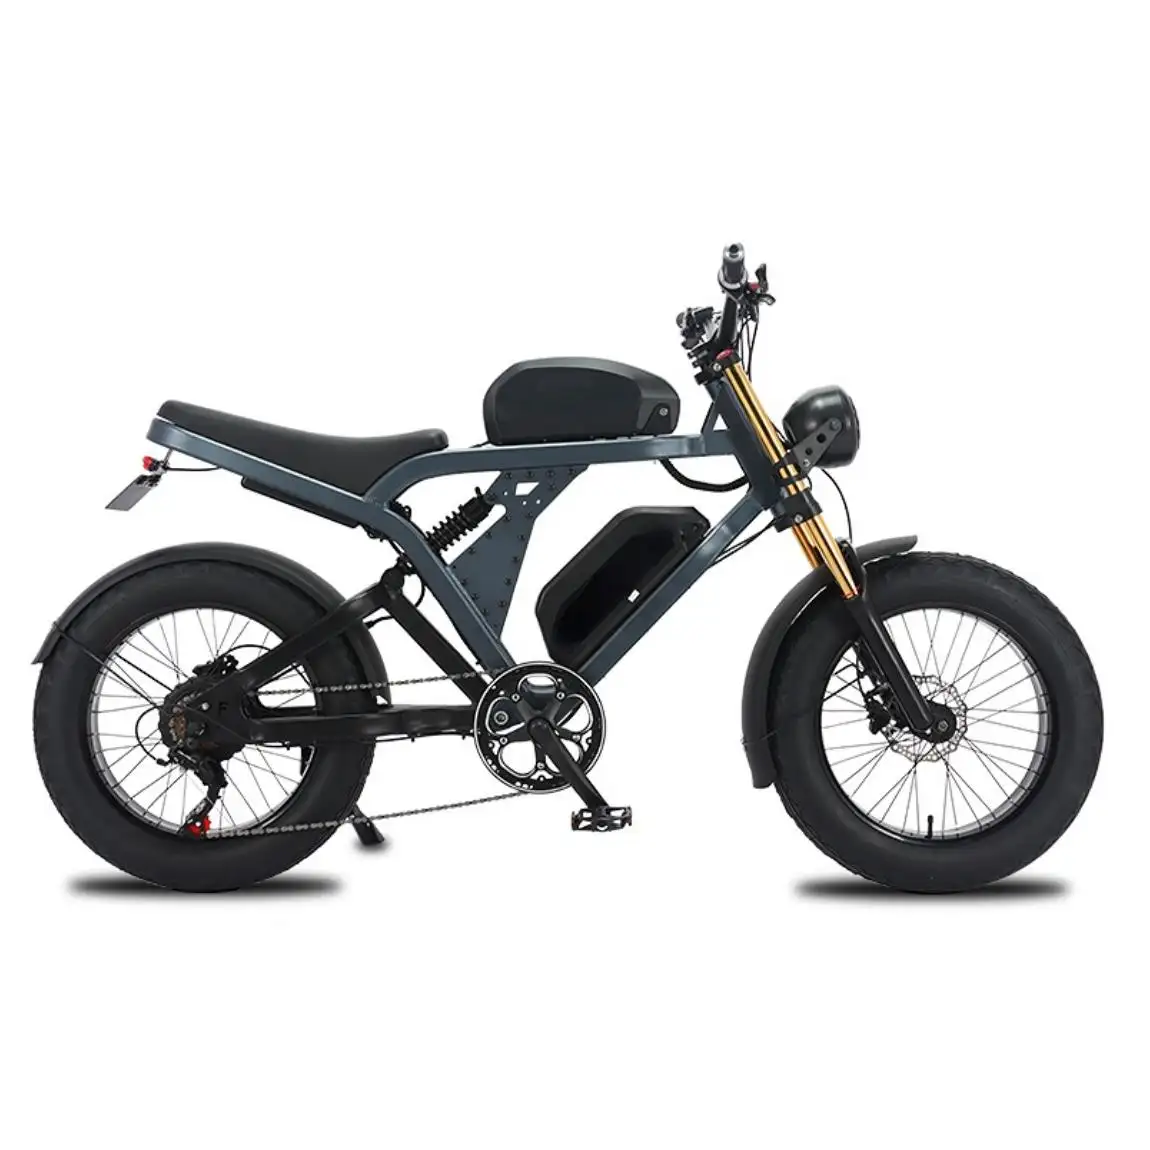 2024 미국 새로운 빈티지 풀 서스펜션 오토바이 오토바이 지방 타이어 1500w 스텔스 폭격기 전기 자전거 듀얼 배터리 41AH 긴 범위